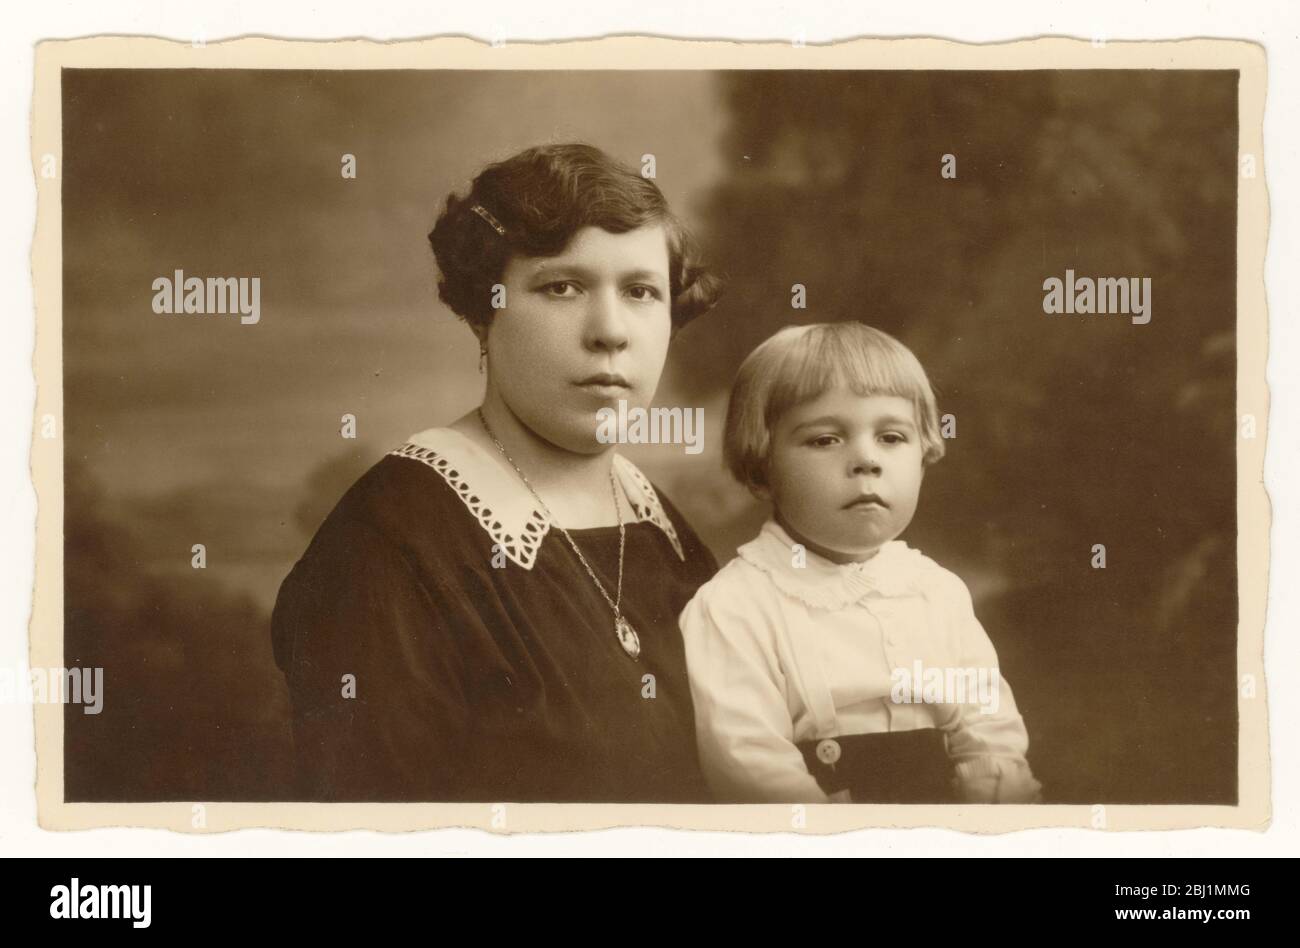 Anfang 1900 Foto von Jungen im Alter von etwa 3 Jahren mit bob Frisur, sitzt mit seiner Mutter, beide sehen ernst, Großbritannien um 1925 Stockfoto